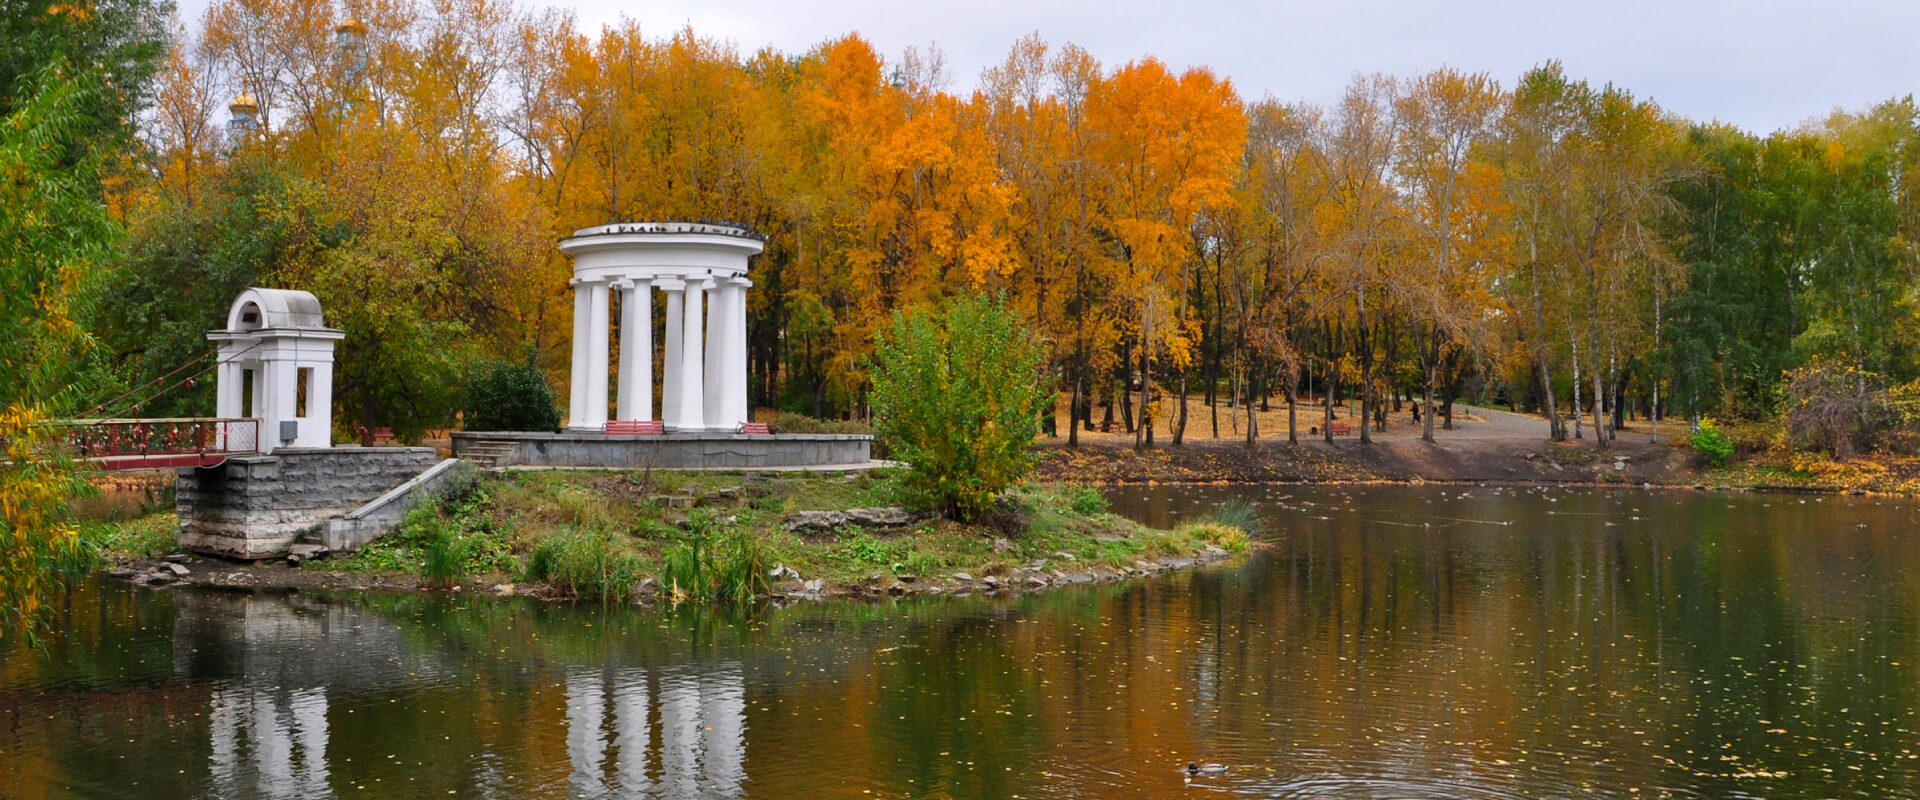 Харитоновский парк в Екатеринбурге. Куда сходить в Екатеринбурге